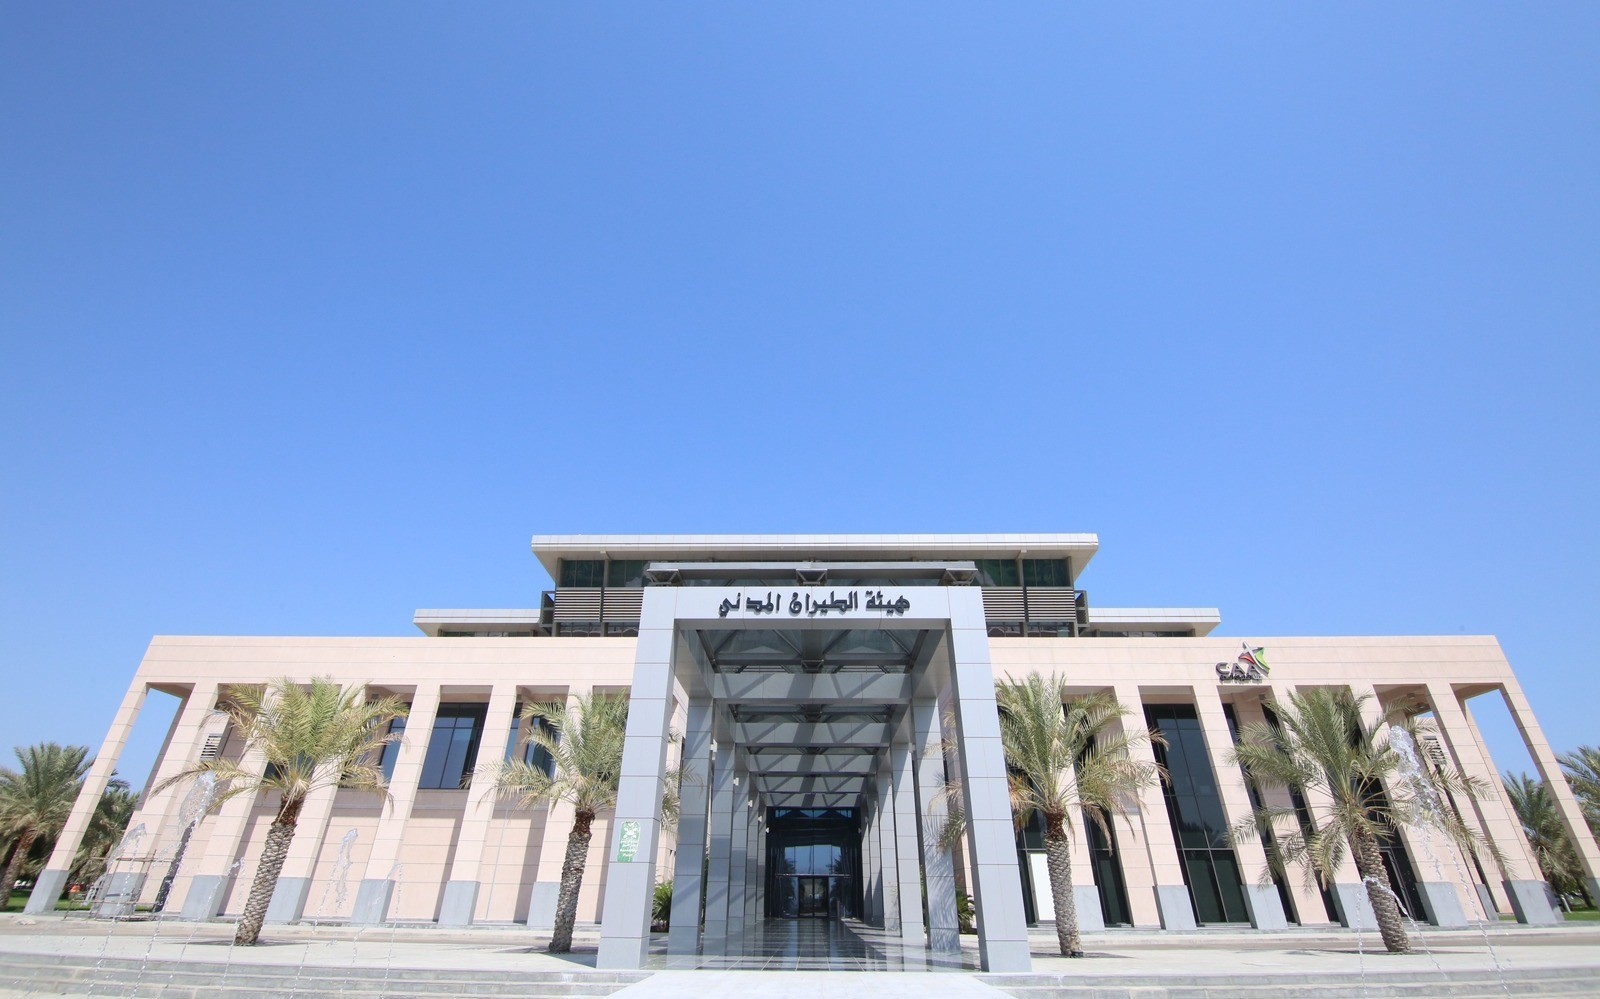 سلطنة عمان تستضيف الاجتماع العشرون للمجموعة الجوية لتخطيط وتنفيذ الملاحة الجوية في الشرق الأوسط والاجتماع العاشر للمجموعة الإقليمية لسلامة الطيران في الشرق الأوسط خلال الفترة (١٤- ١٧ ) مايو ٢٠٢٣م